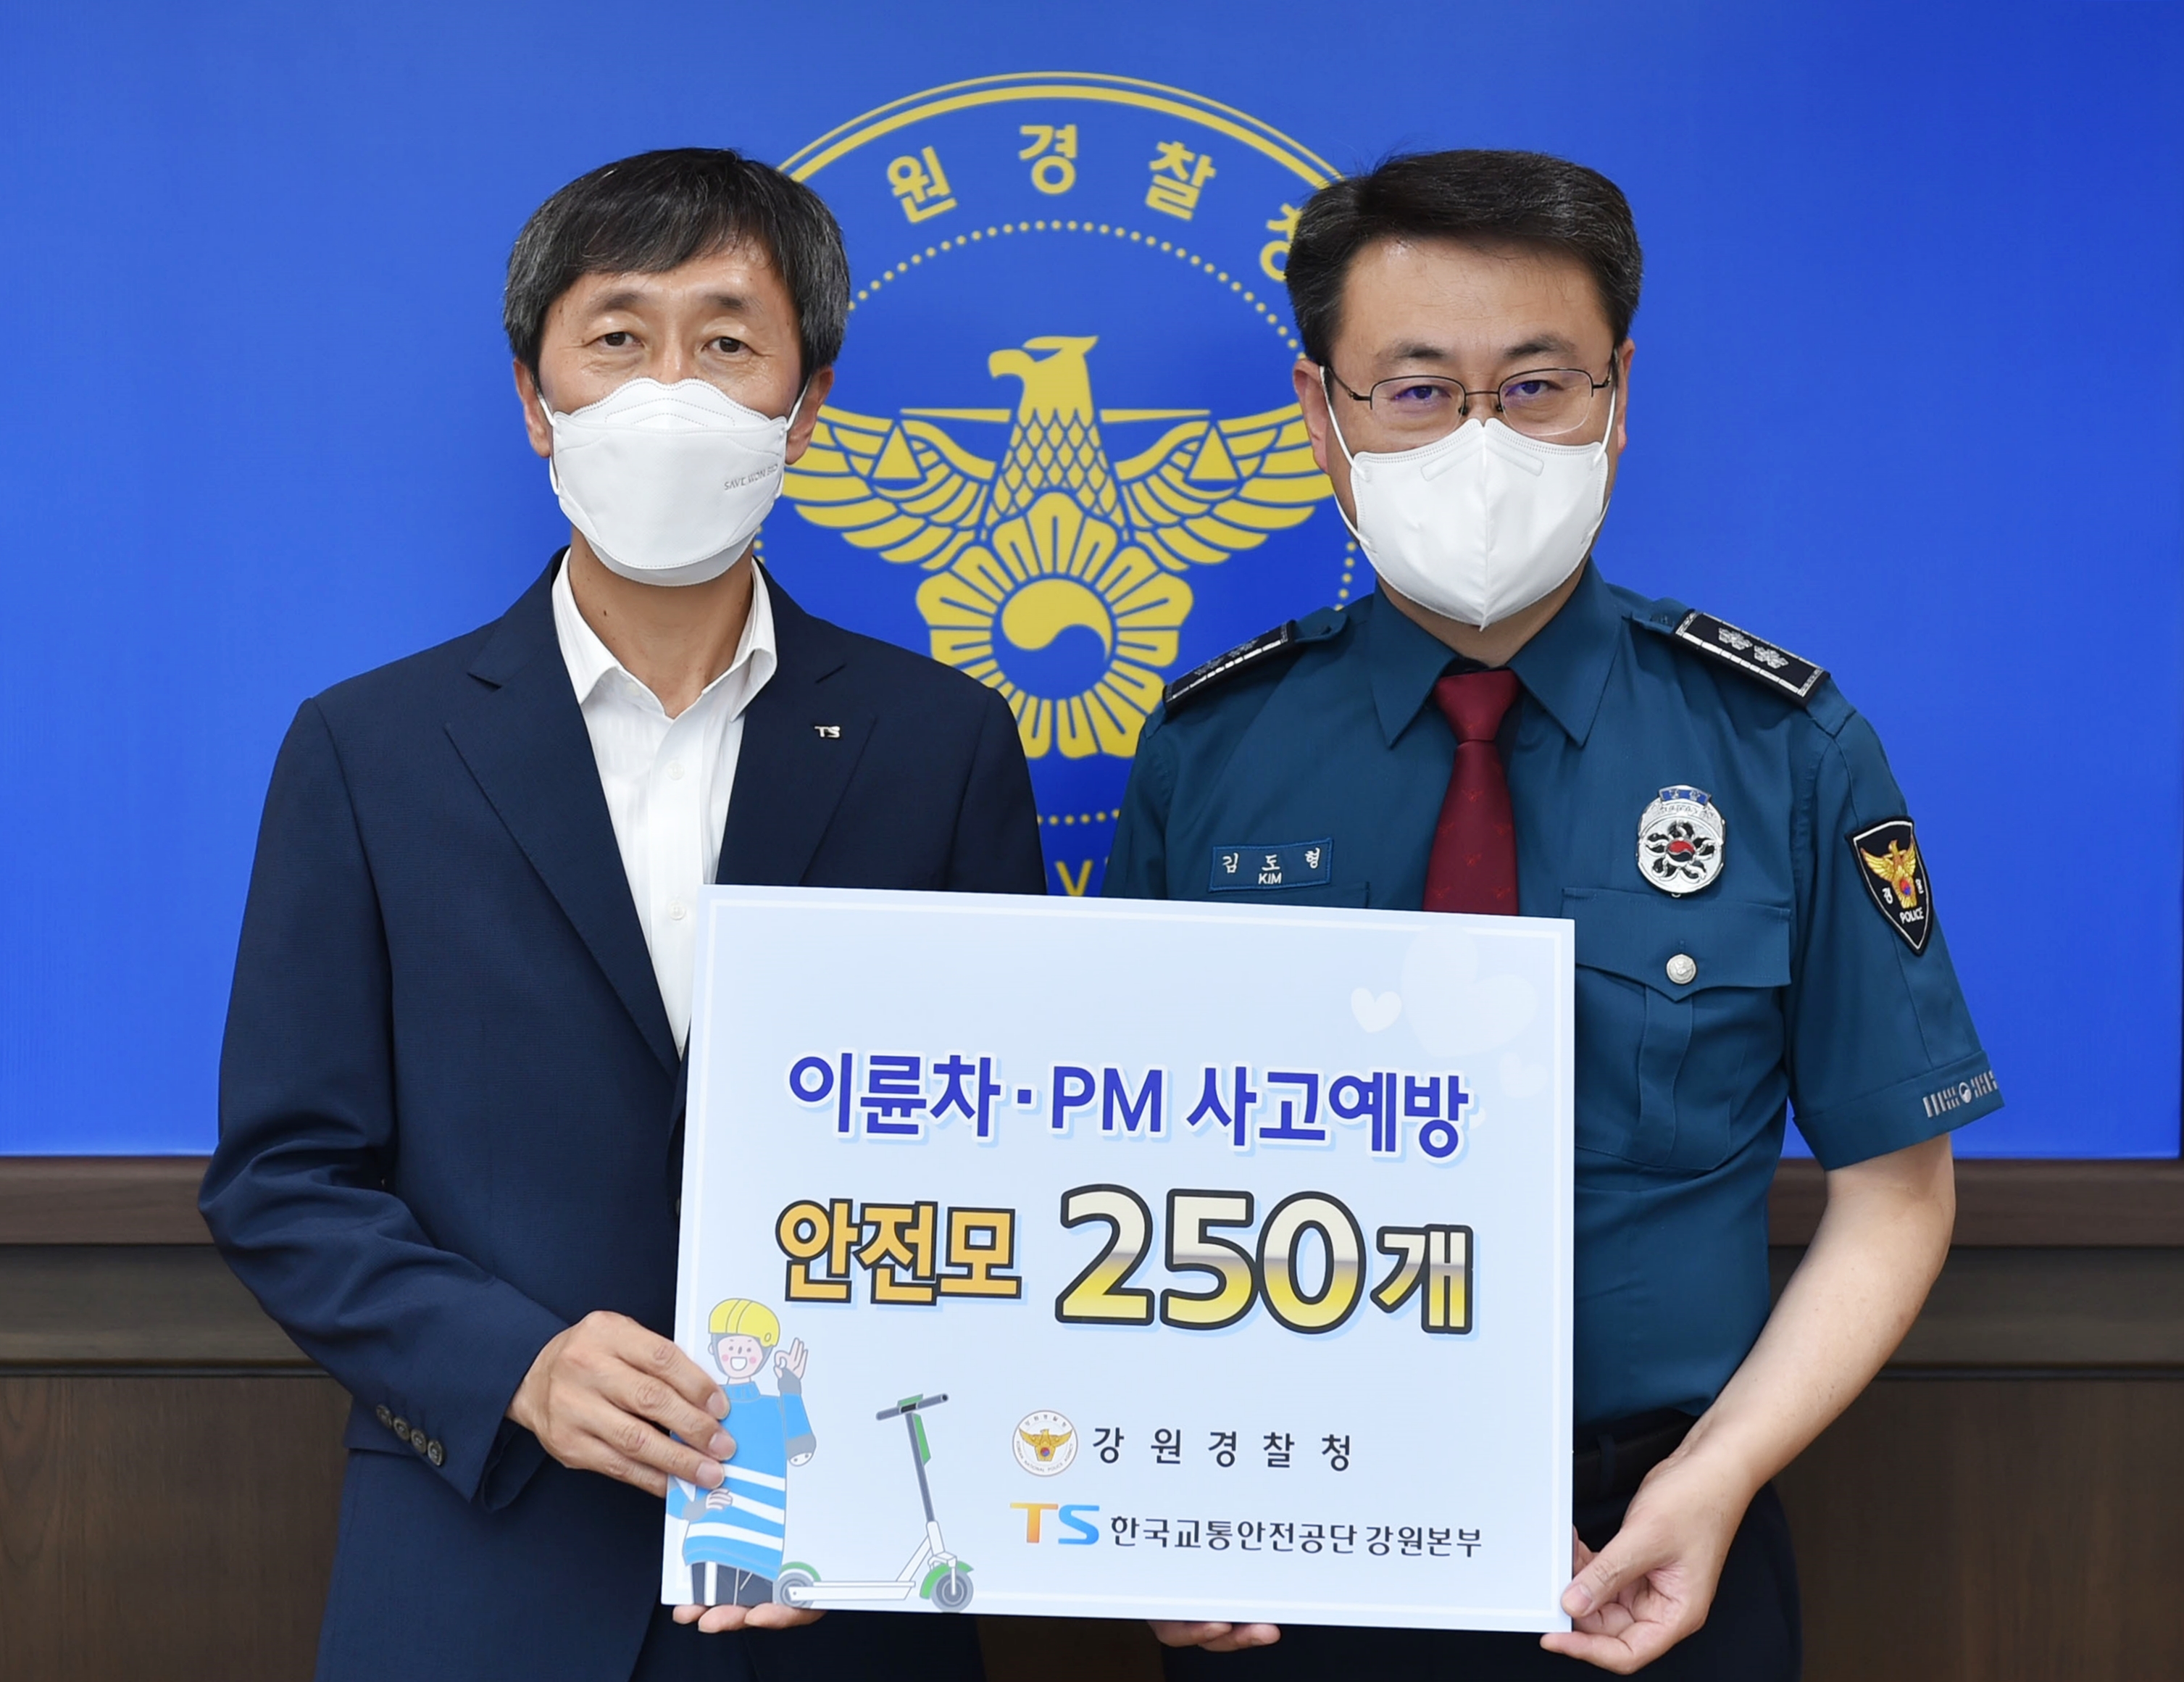 강원경찰-교통안전공단, PM 사고 예방 협력-DSC_5294